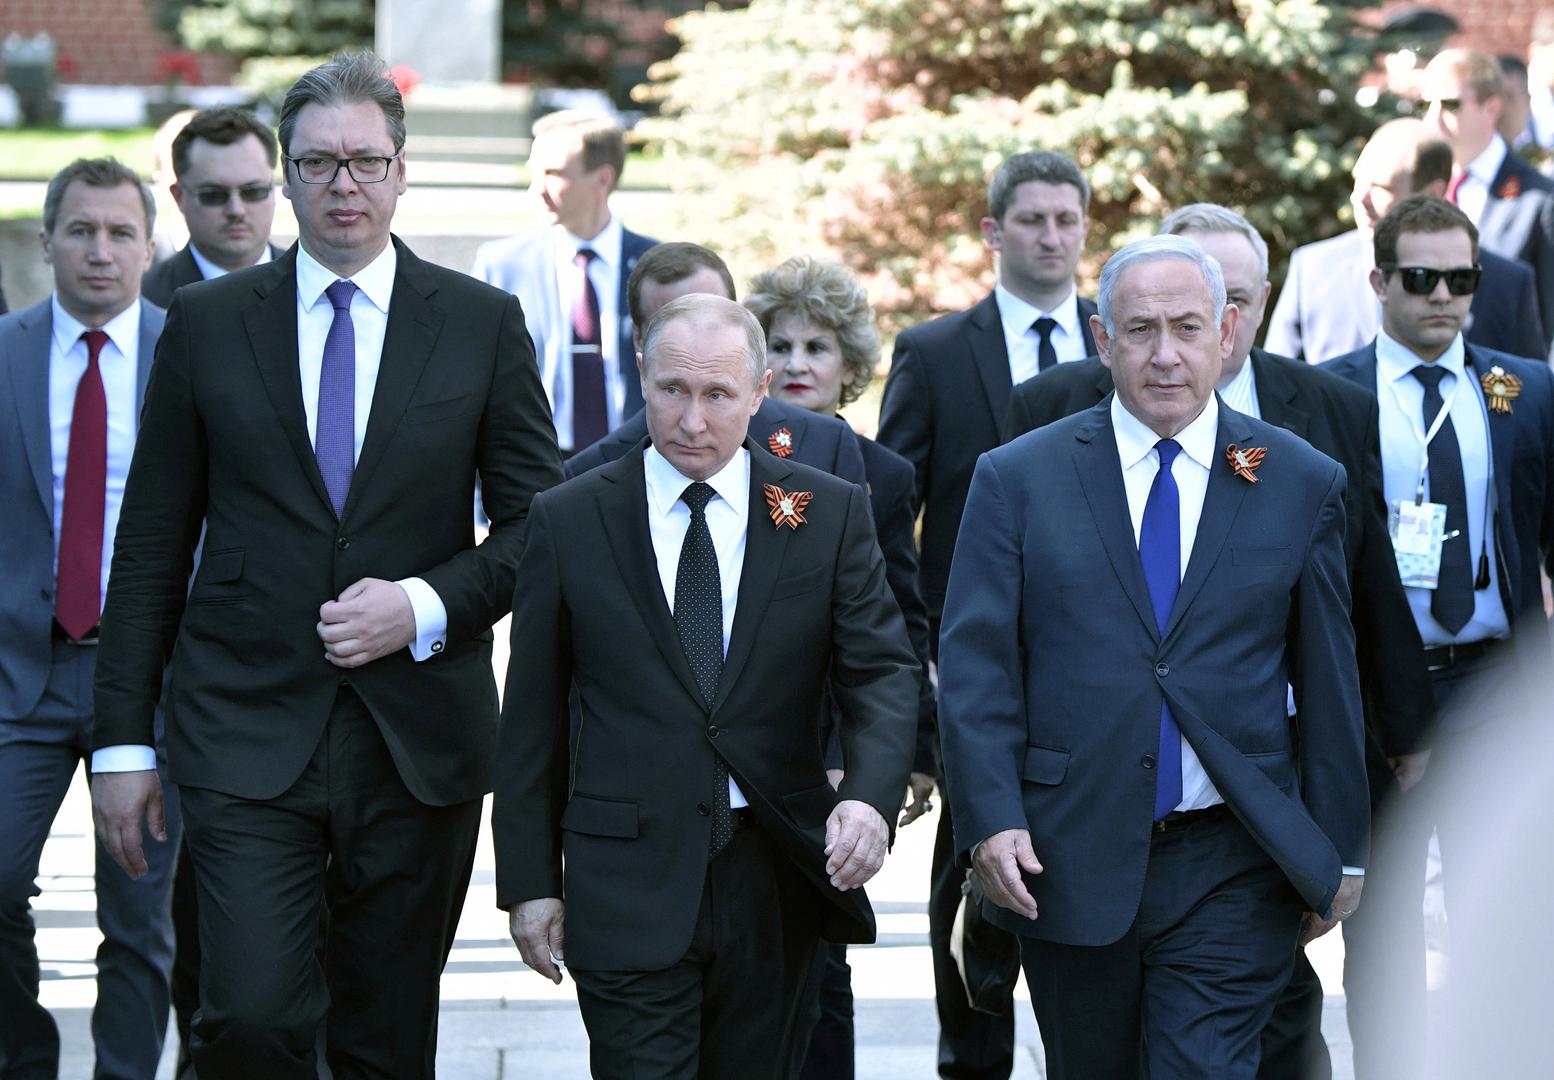 Na paradu su stigli i srbijanski predsjednik Aleksandar Vučić i izraelski premijer Benjamin Netanyahu, na slici s predsjednikom Rusije Vladimirom Putinom.